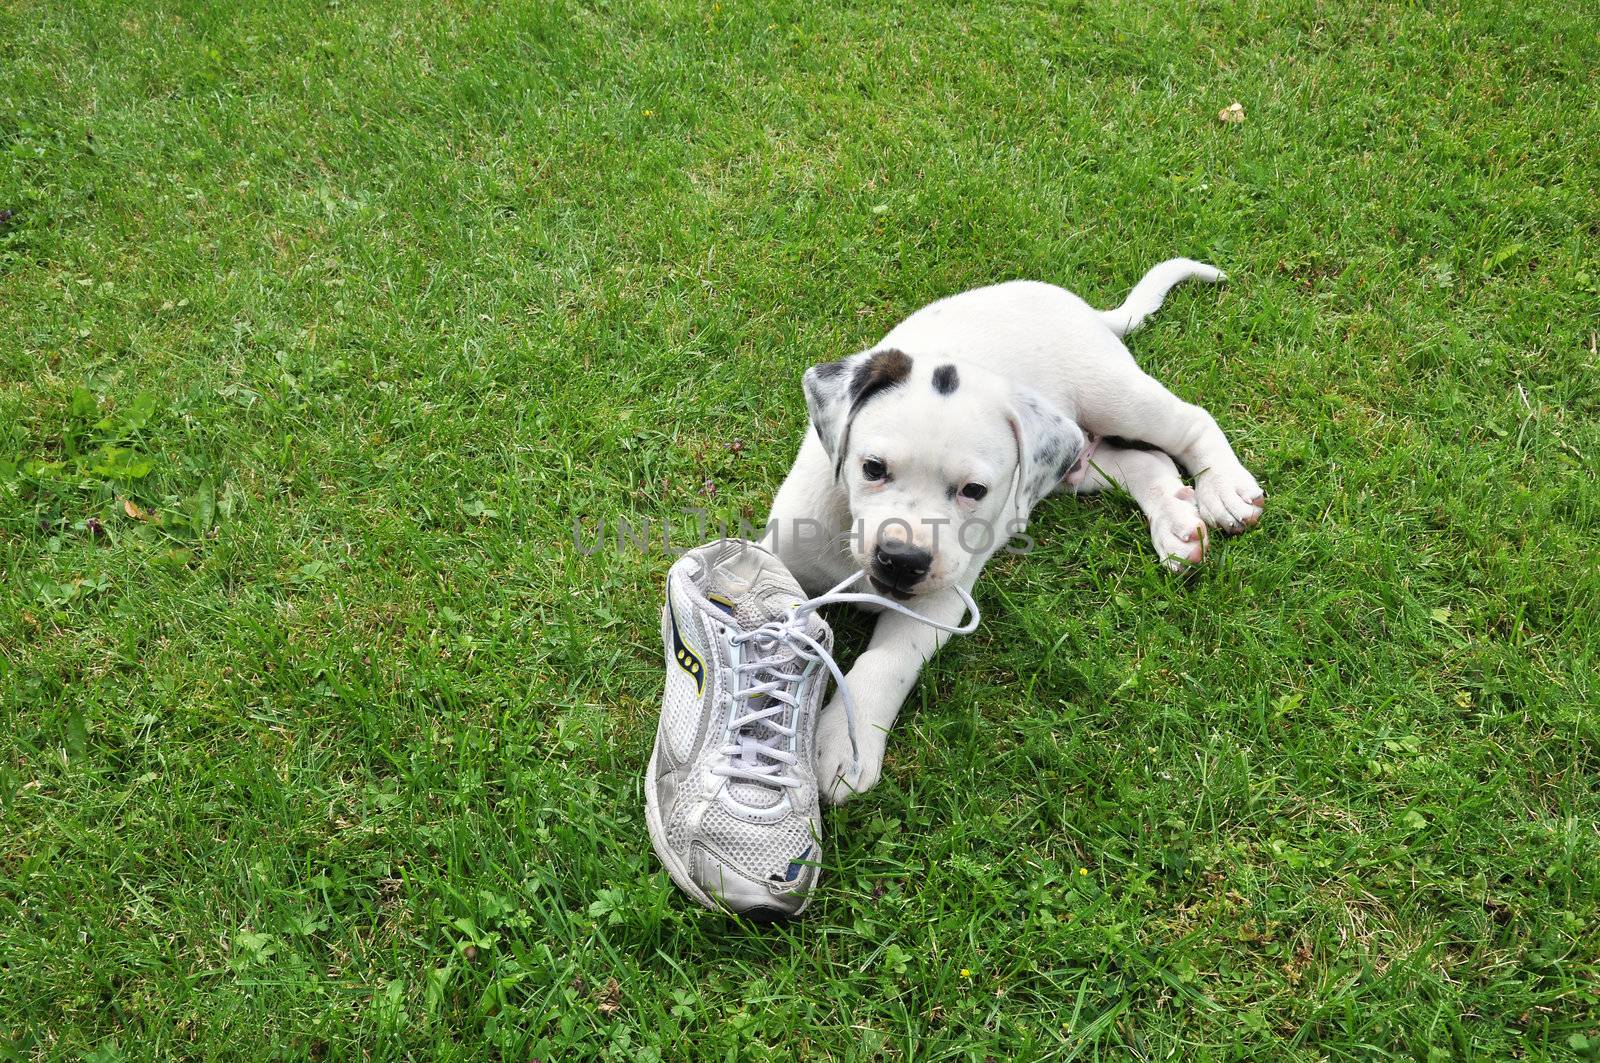 A cross between pitbull and Saint bernard puppy on grass with shoe.